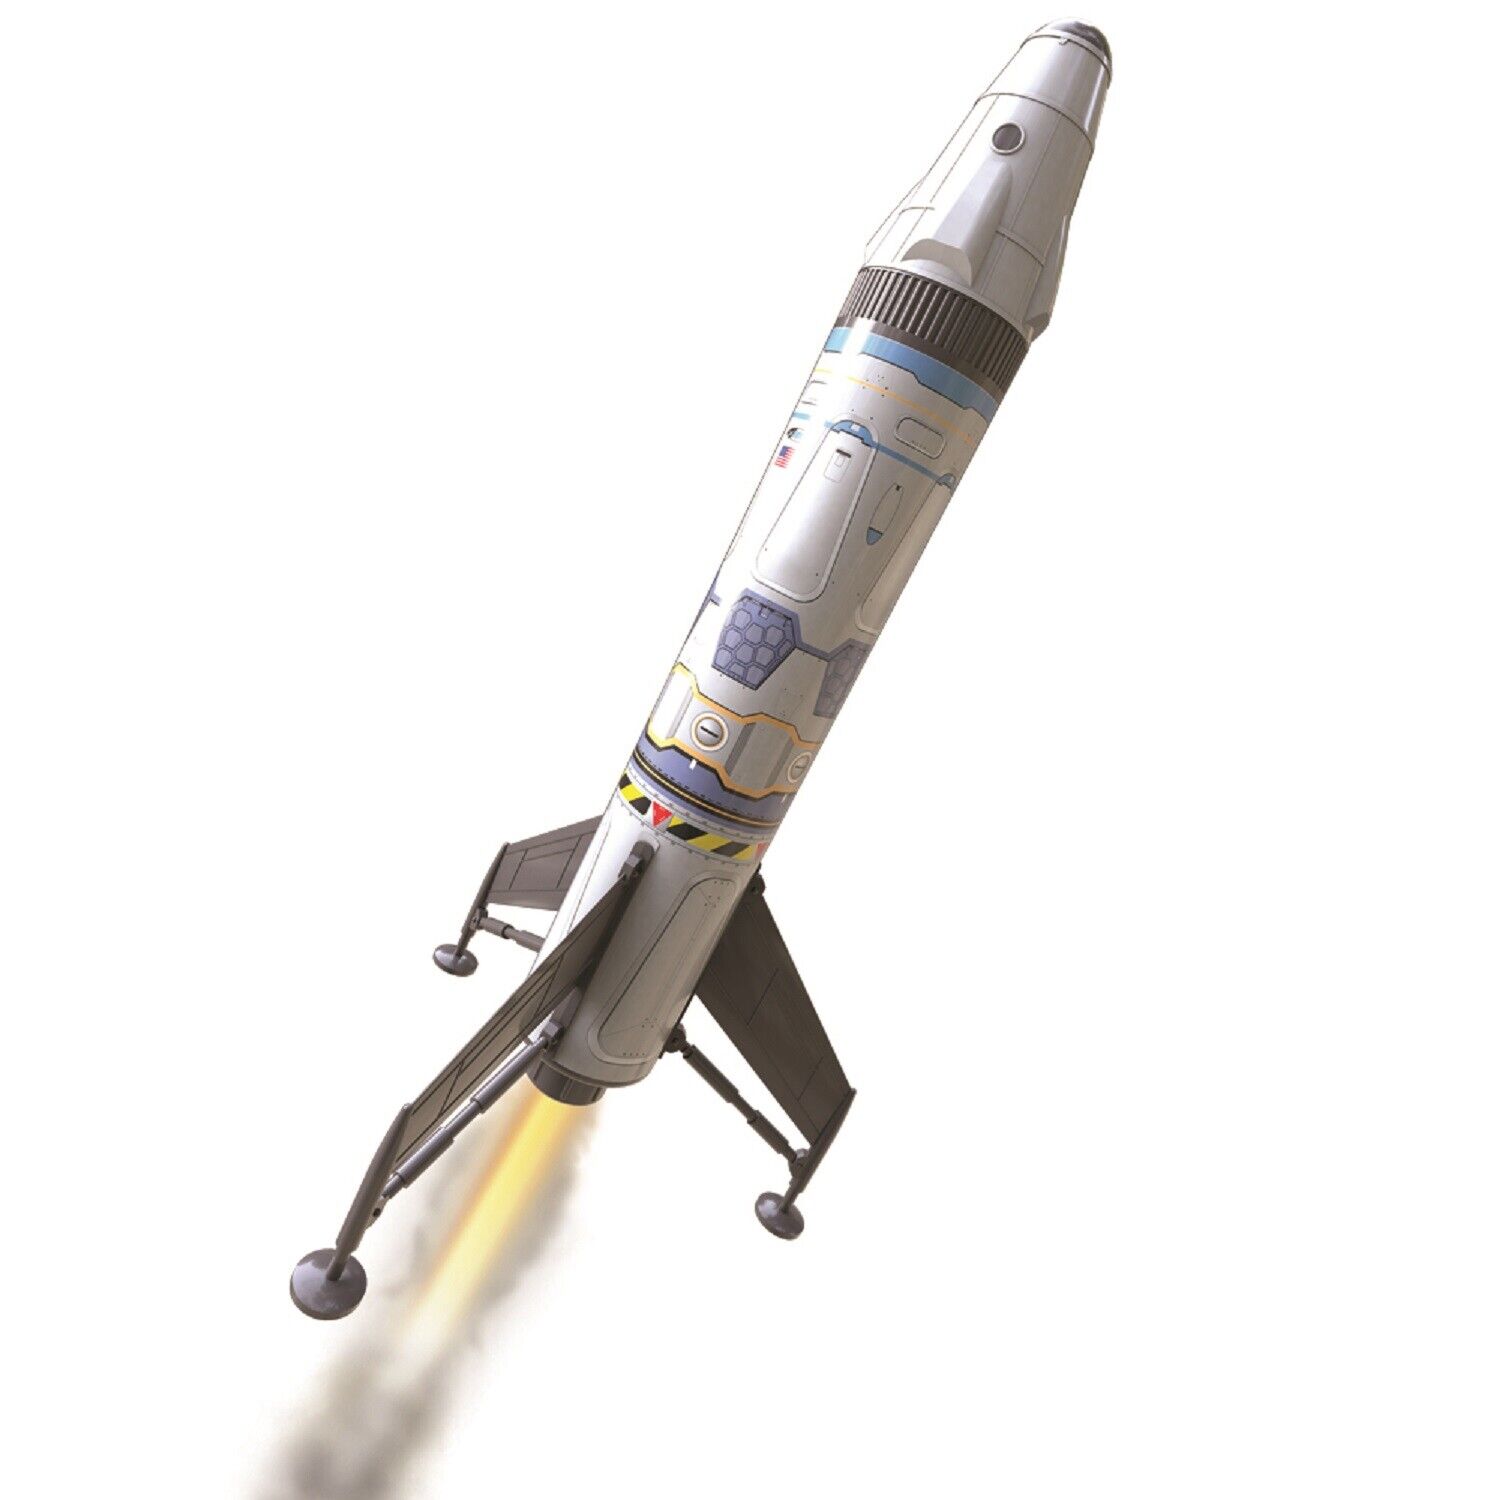 Estes Mav Rocket Kit | Ready to Fly